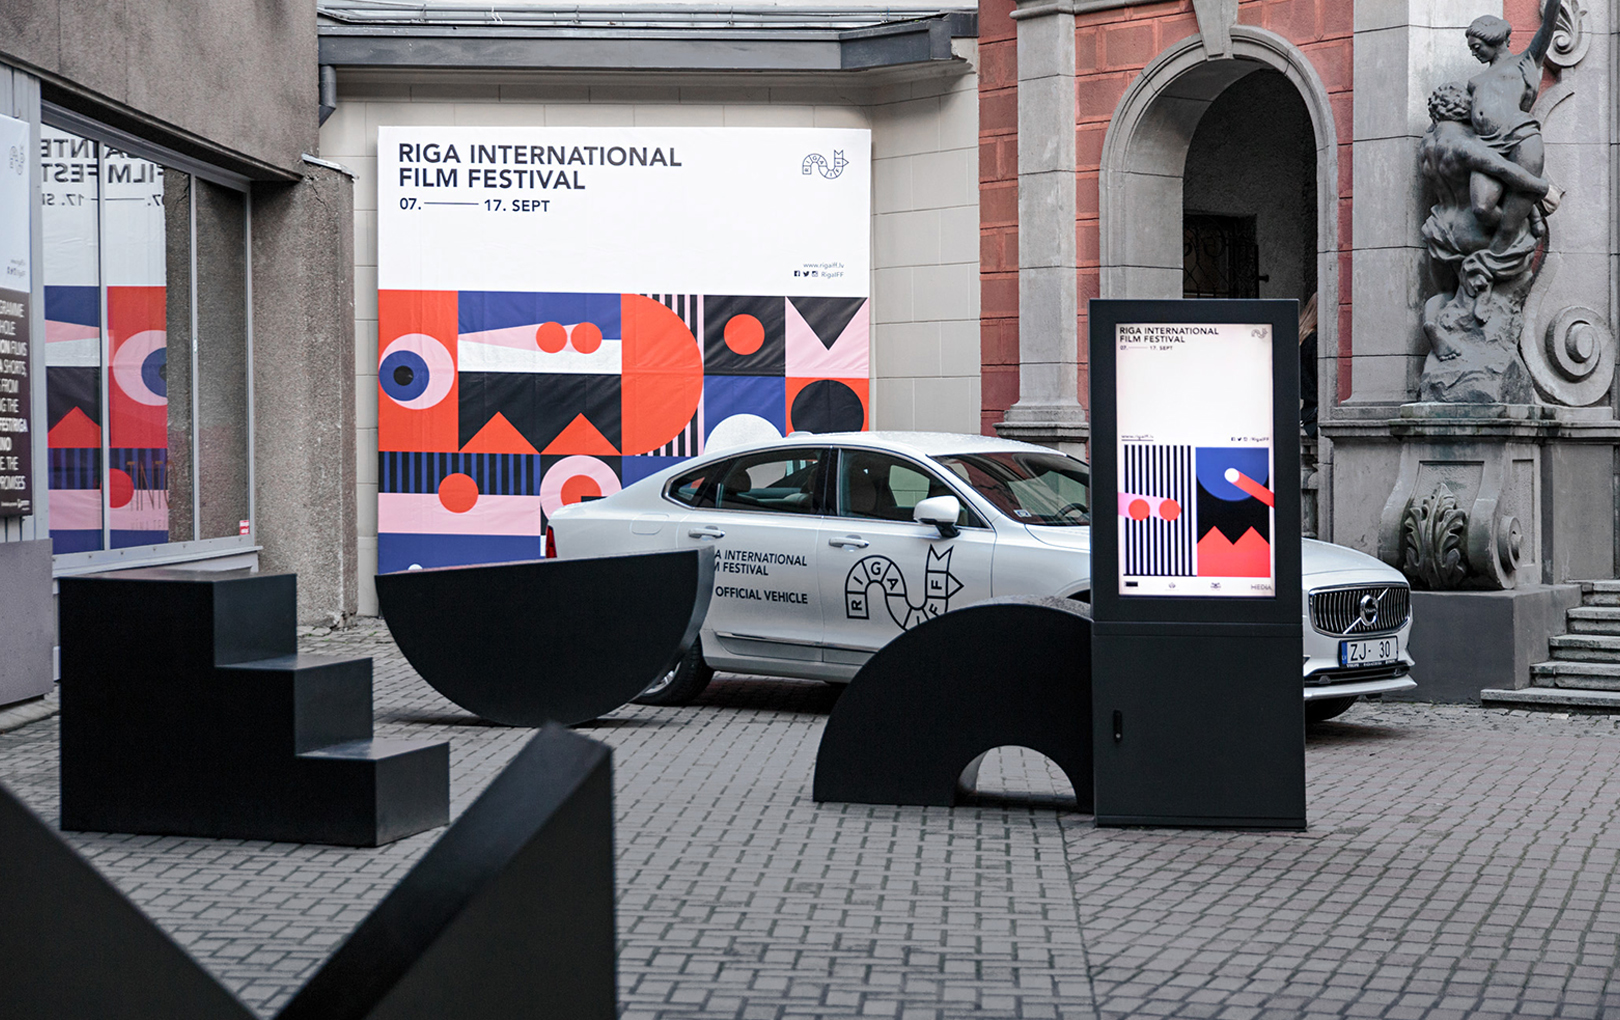 Riga International Film Festival 2017